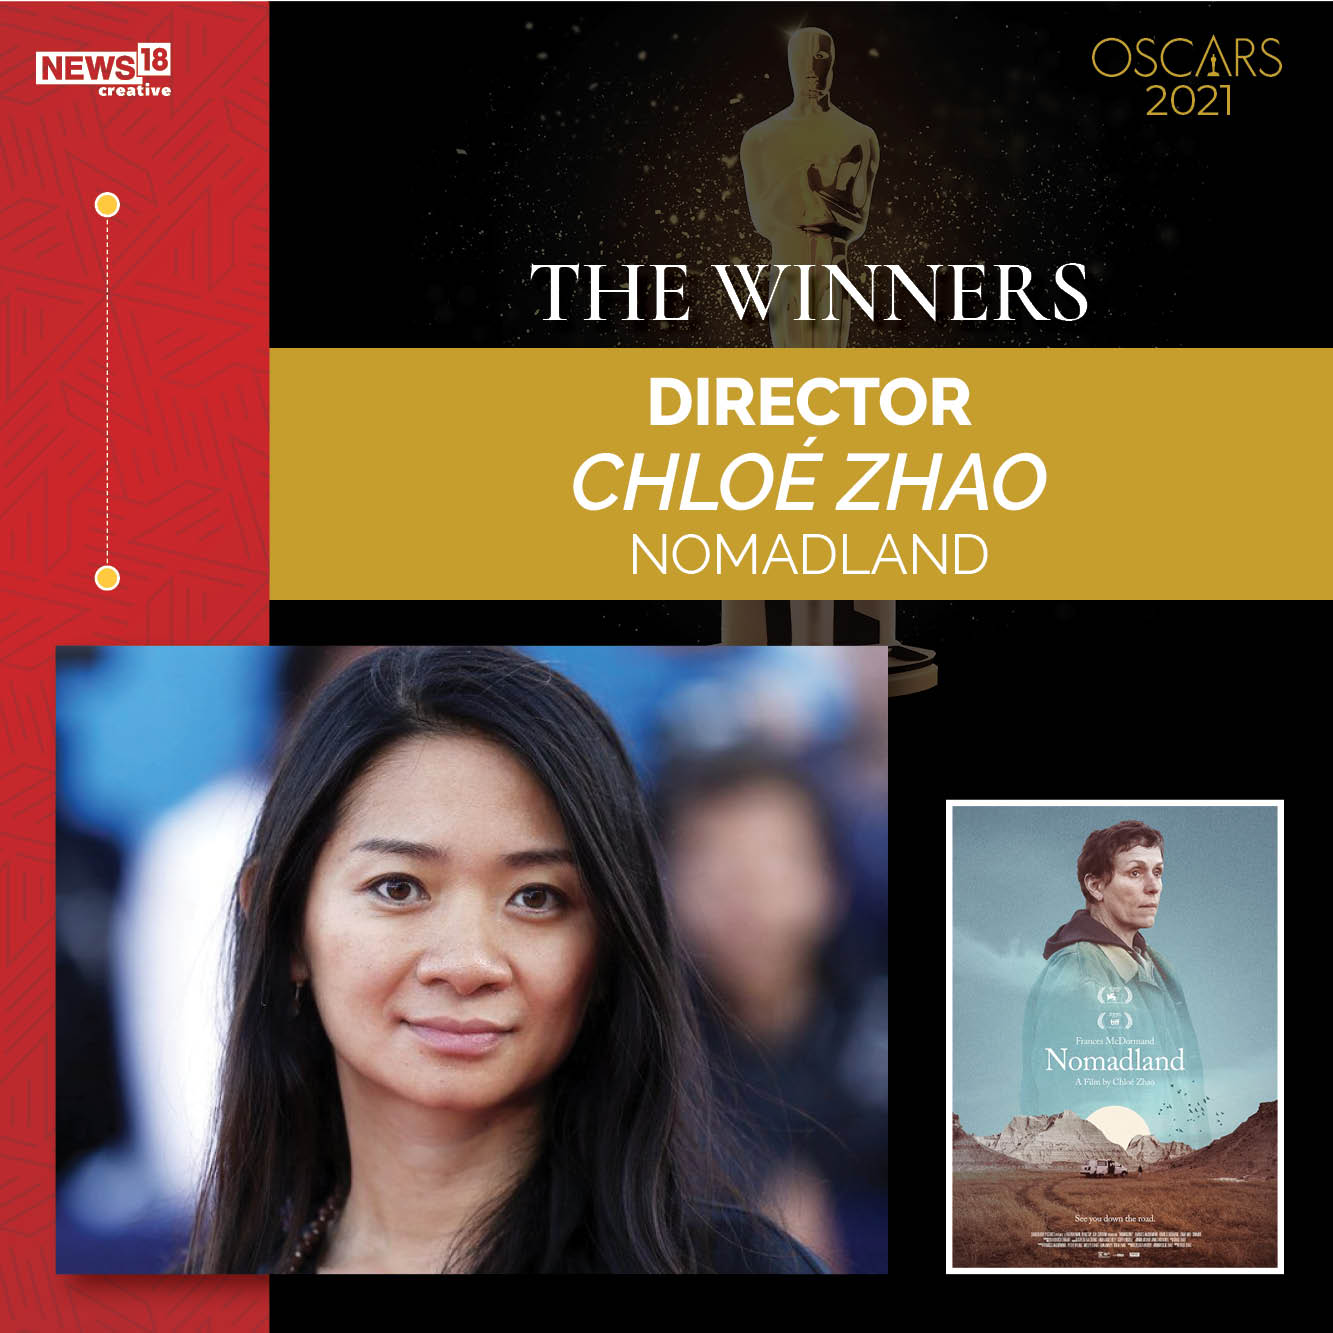 2021 Oscars winners: 'Nomadland,' Chloe Zhao, and Anthony Hopkins